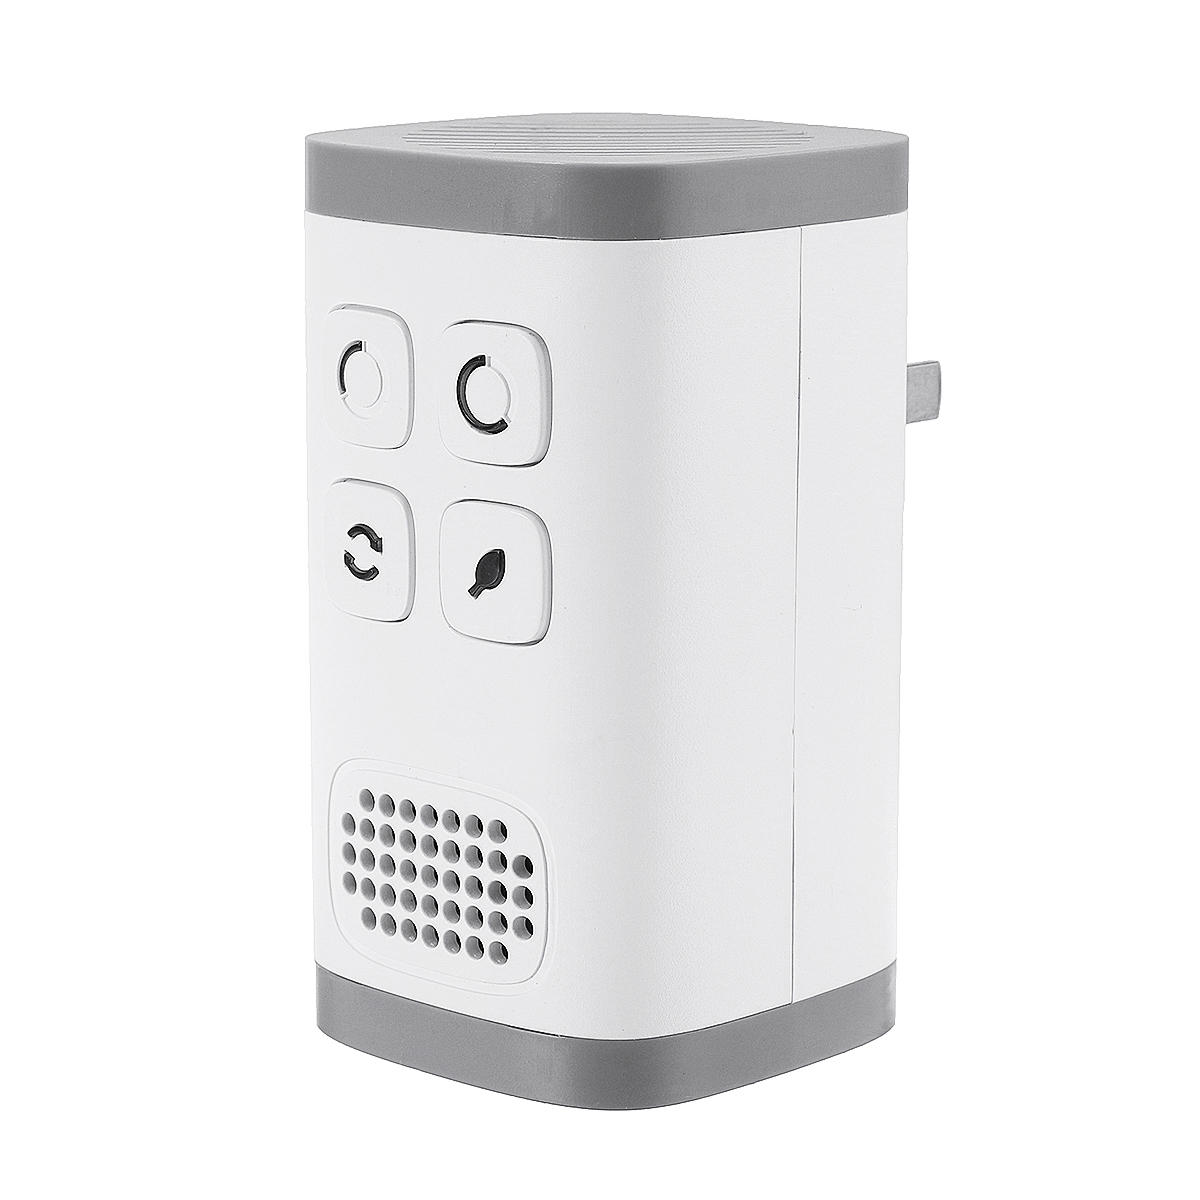 AC110-240V Plug-in Purificador de aire Generador de ozono Ionizador Limpio Eliminador de olores de grado industrial Puri